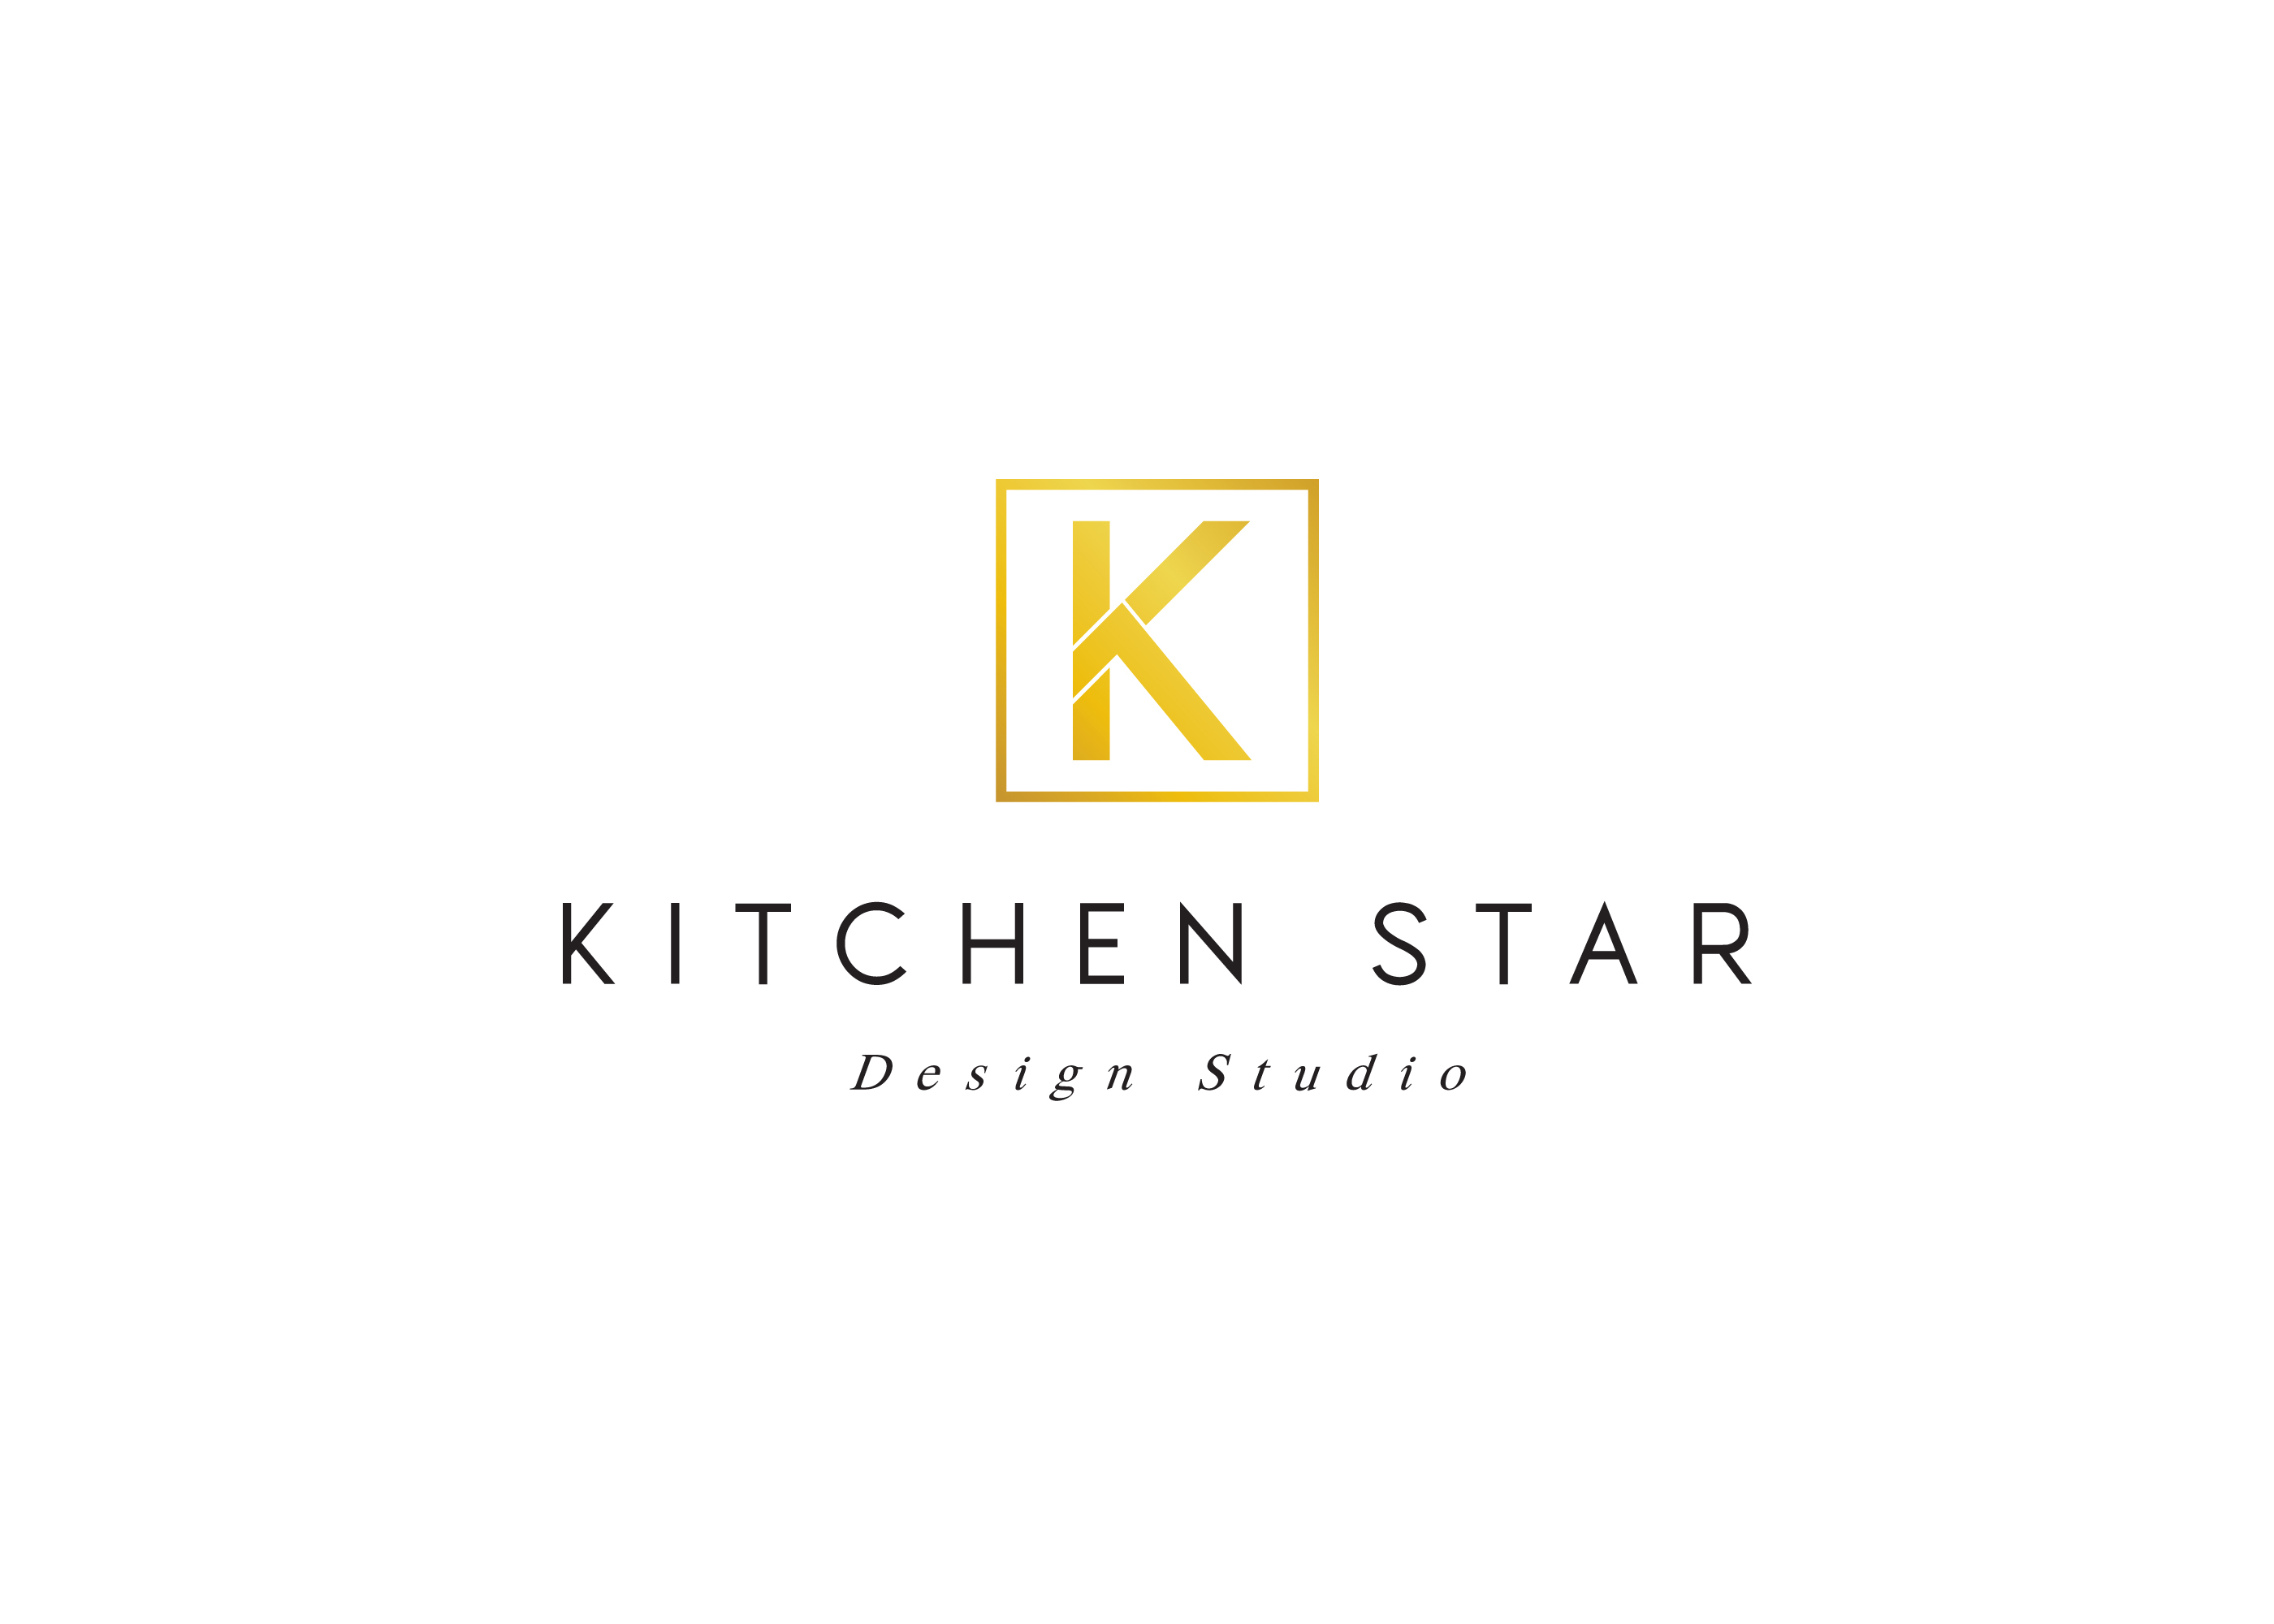 Kitchen Star Design Studio's logo